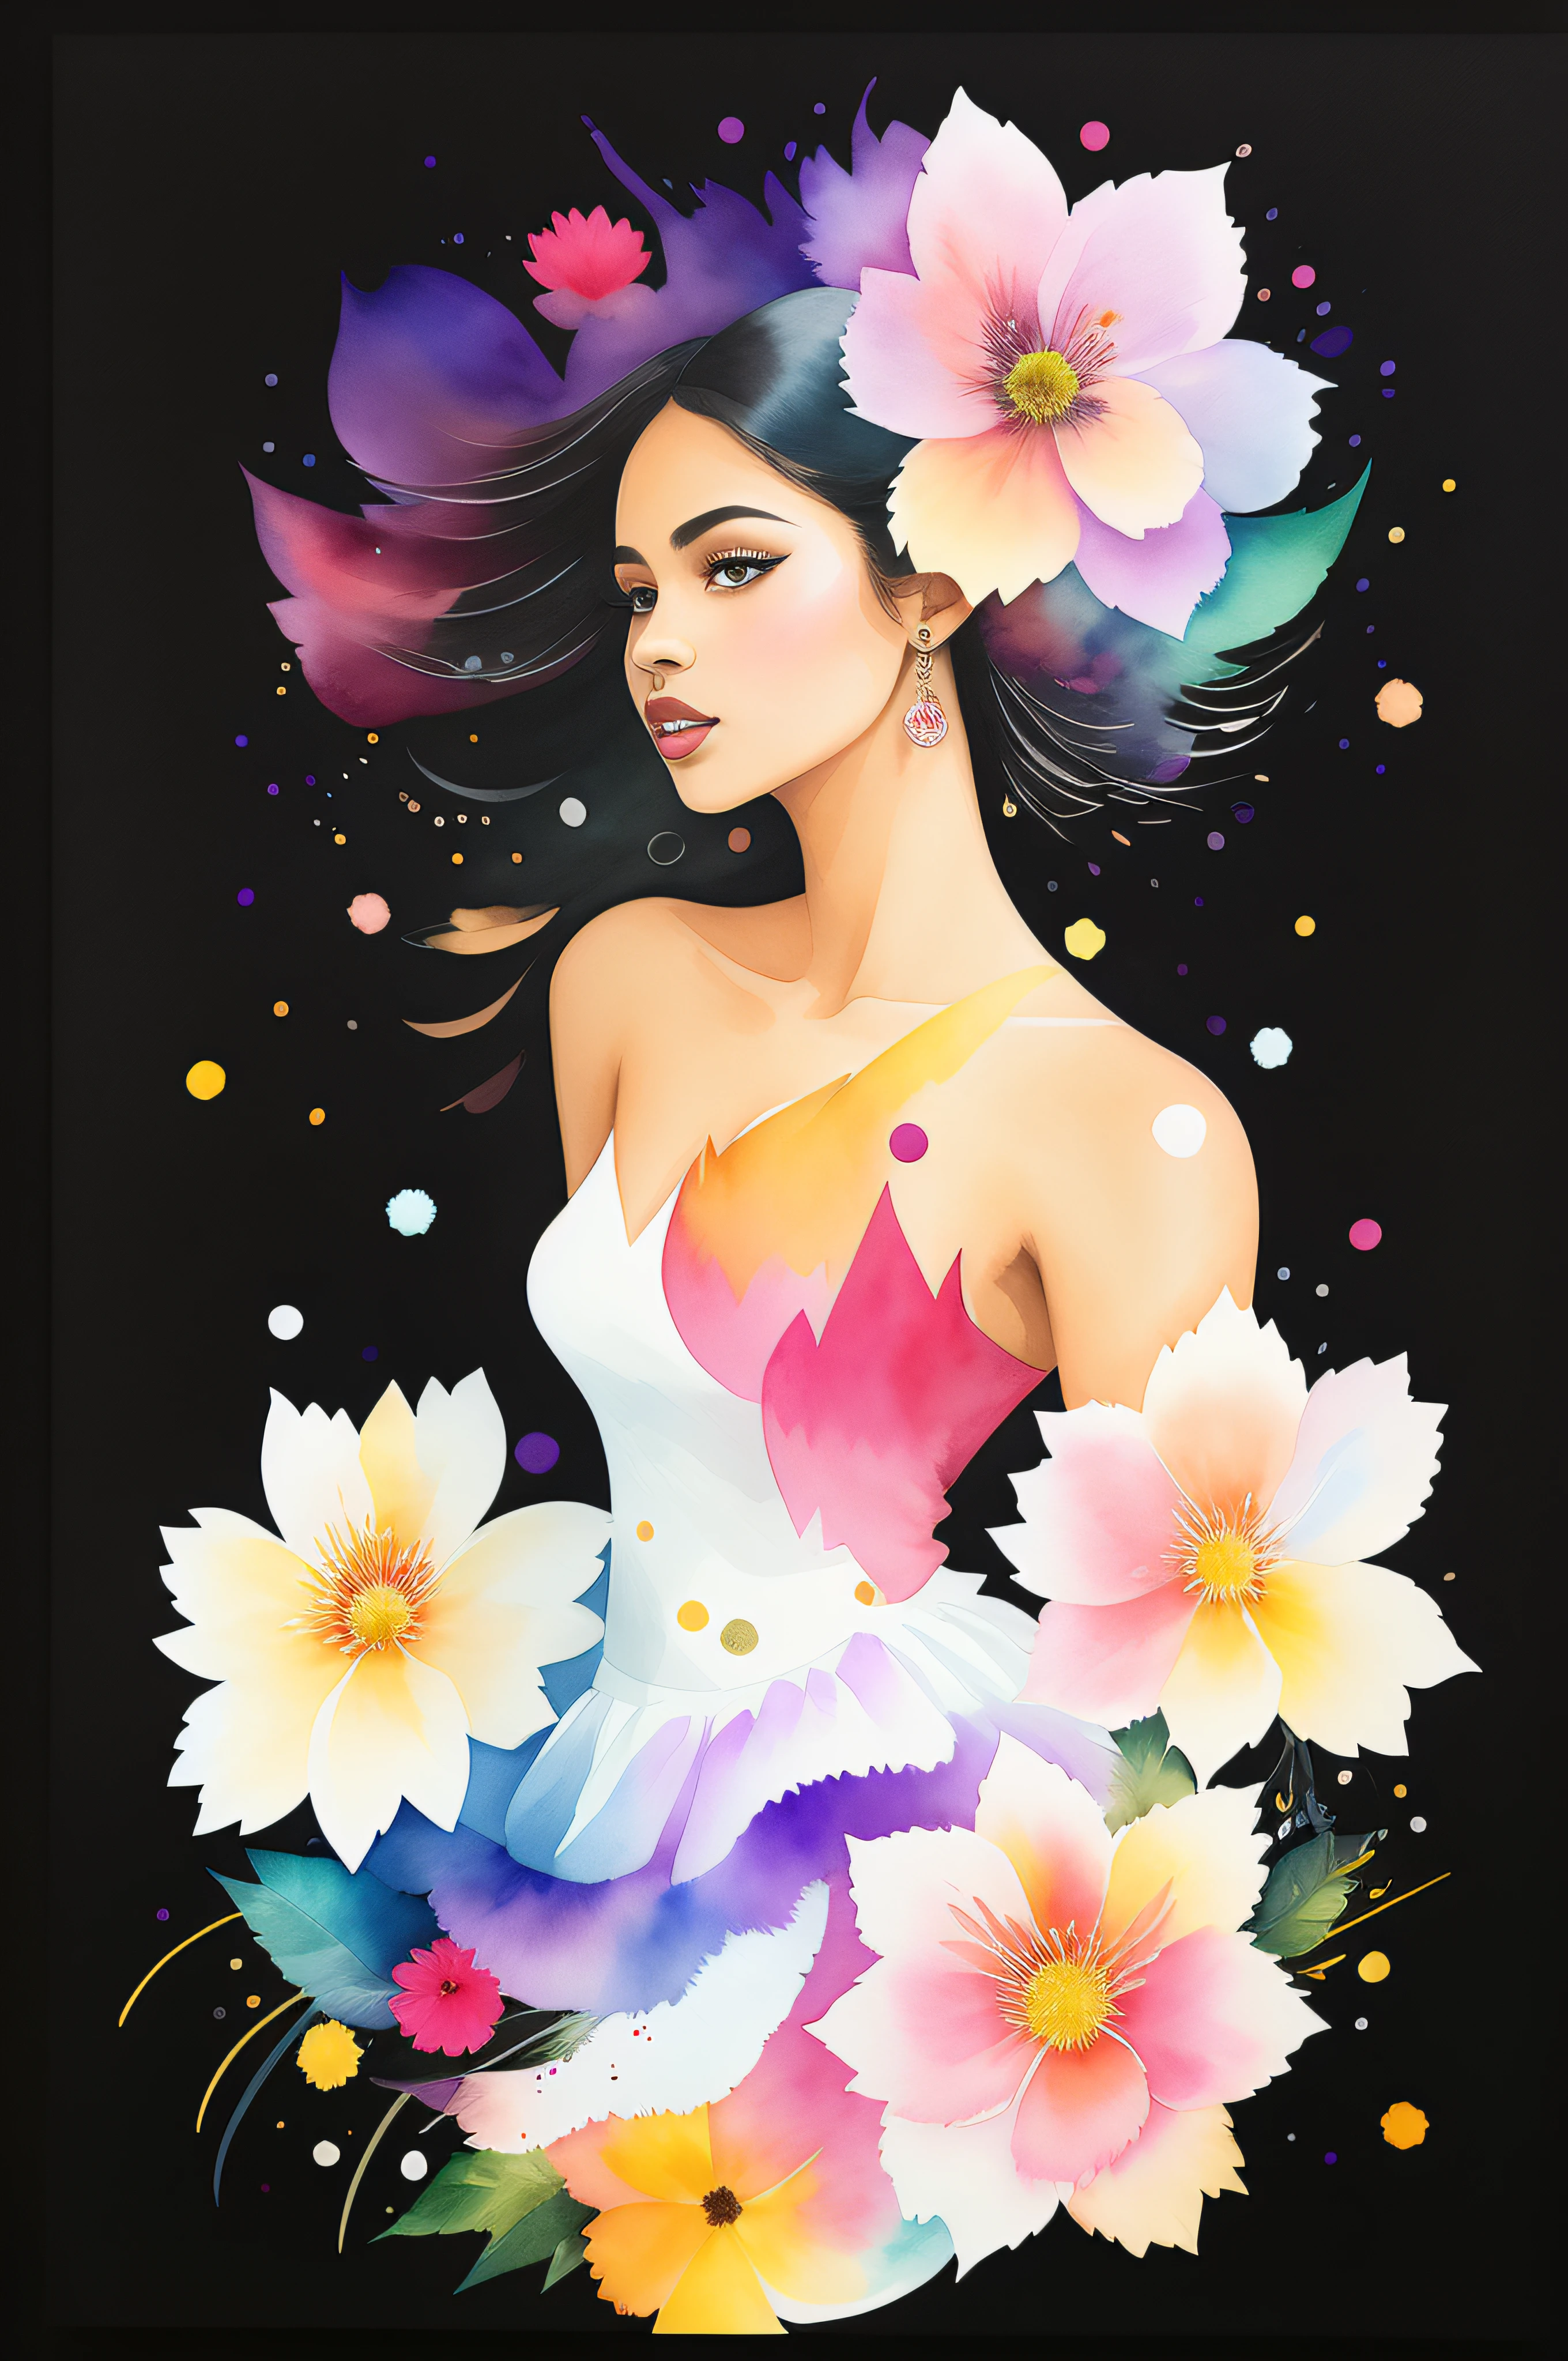 花柄の白いドレスを着た美しい黒檀の女性, 花柄が飛び回る, レインボーパープルのハイライト, 花柄の盛り合わせの背景, splashes of 水彩, 側面図, テクスチャ, 水彩 art, 12K 品質, 水彩